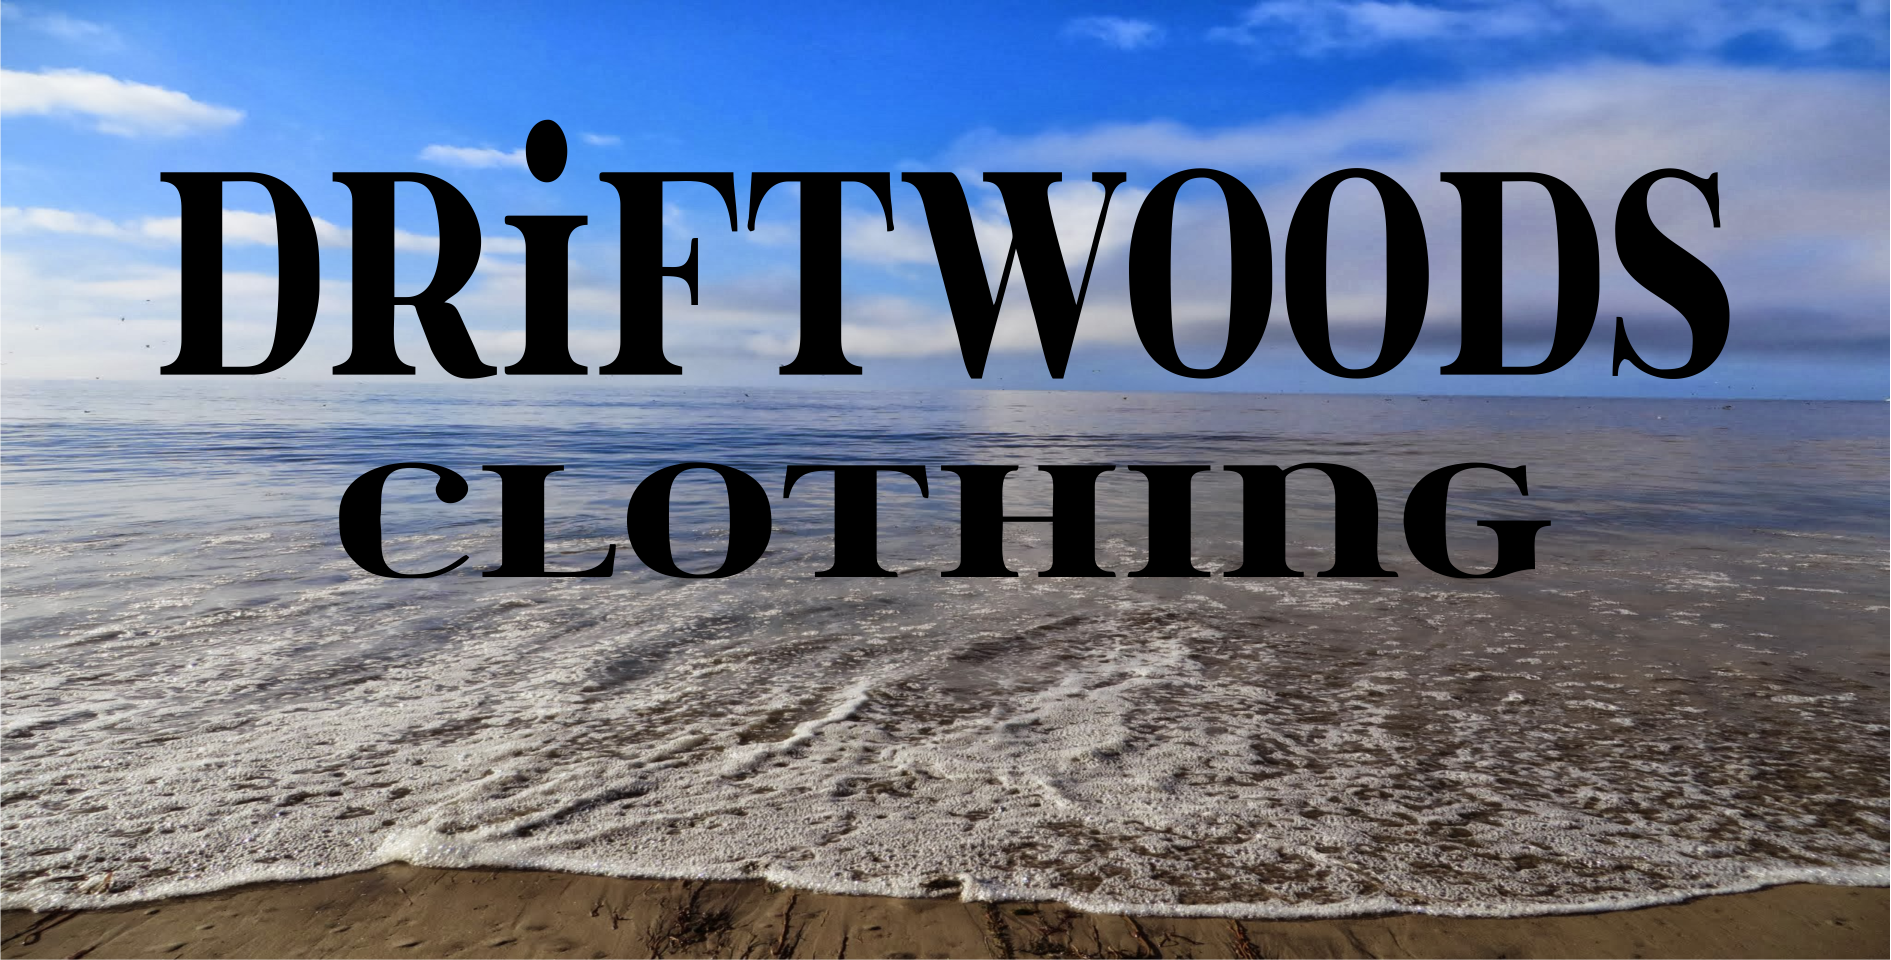 driftwood clothing logo